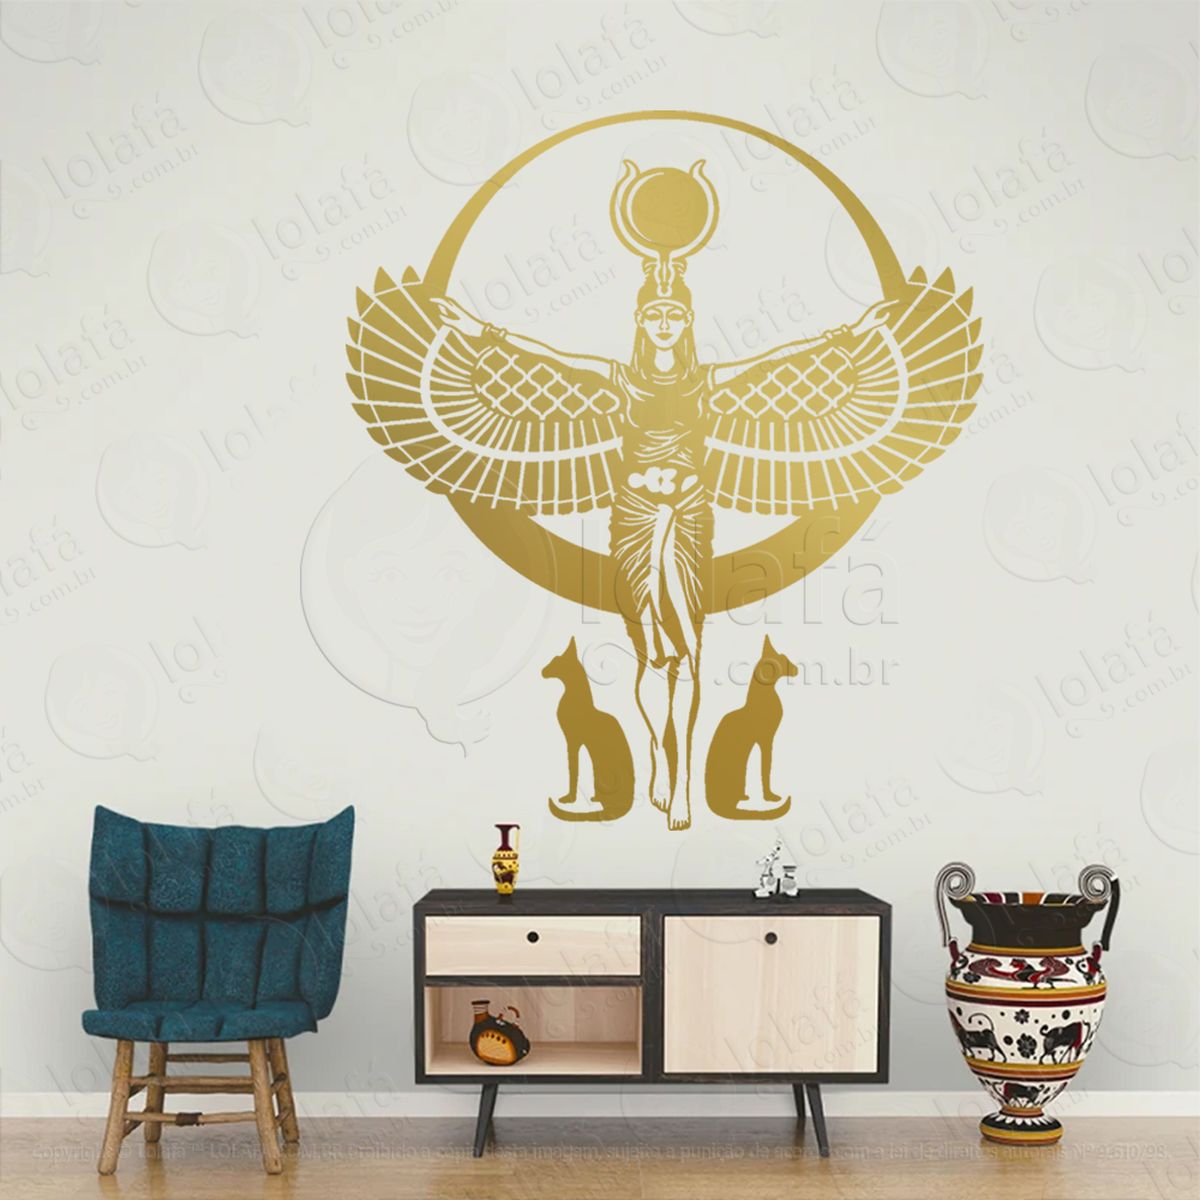 deusa egípcia isis egito pagão adesivo de parede decorativo para casa, sala, quarto, vidro e altar ocultista - mod:290